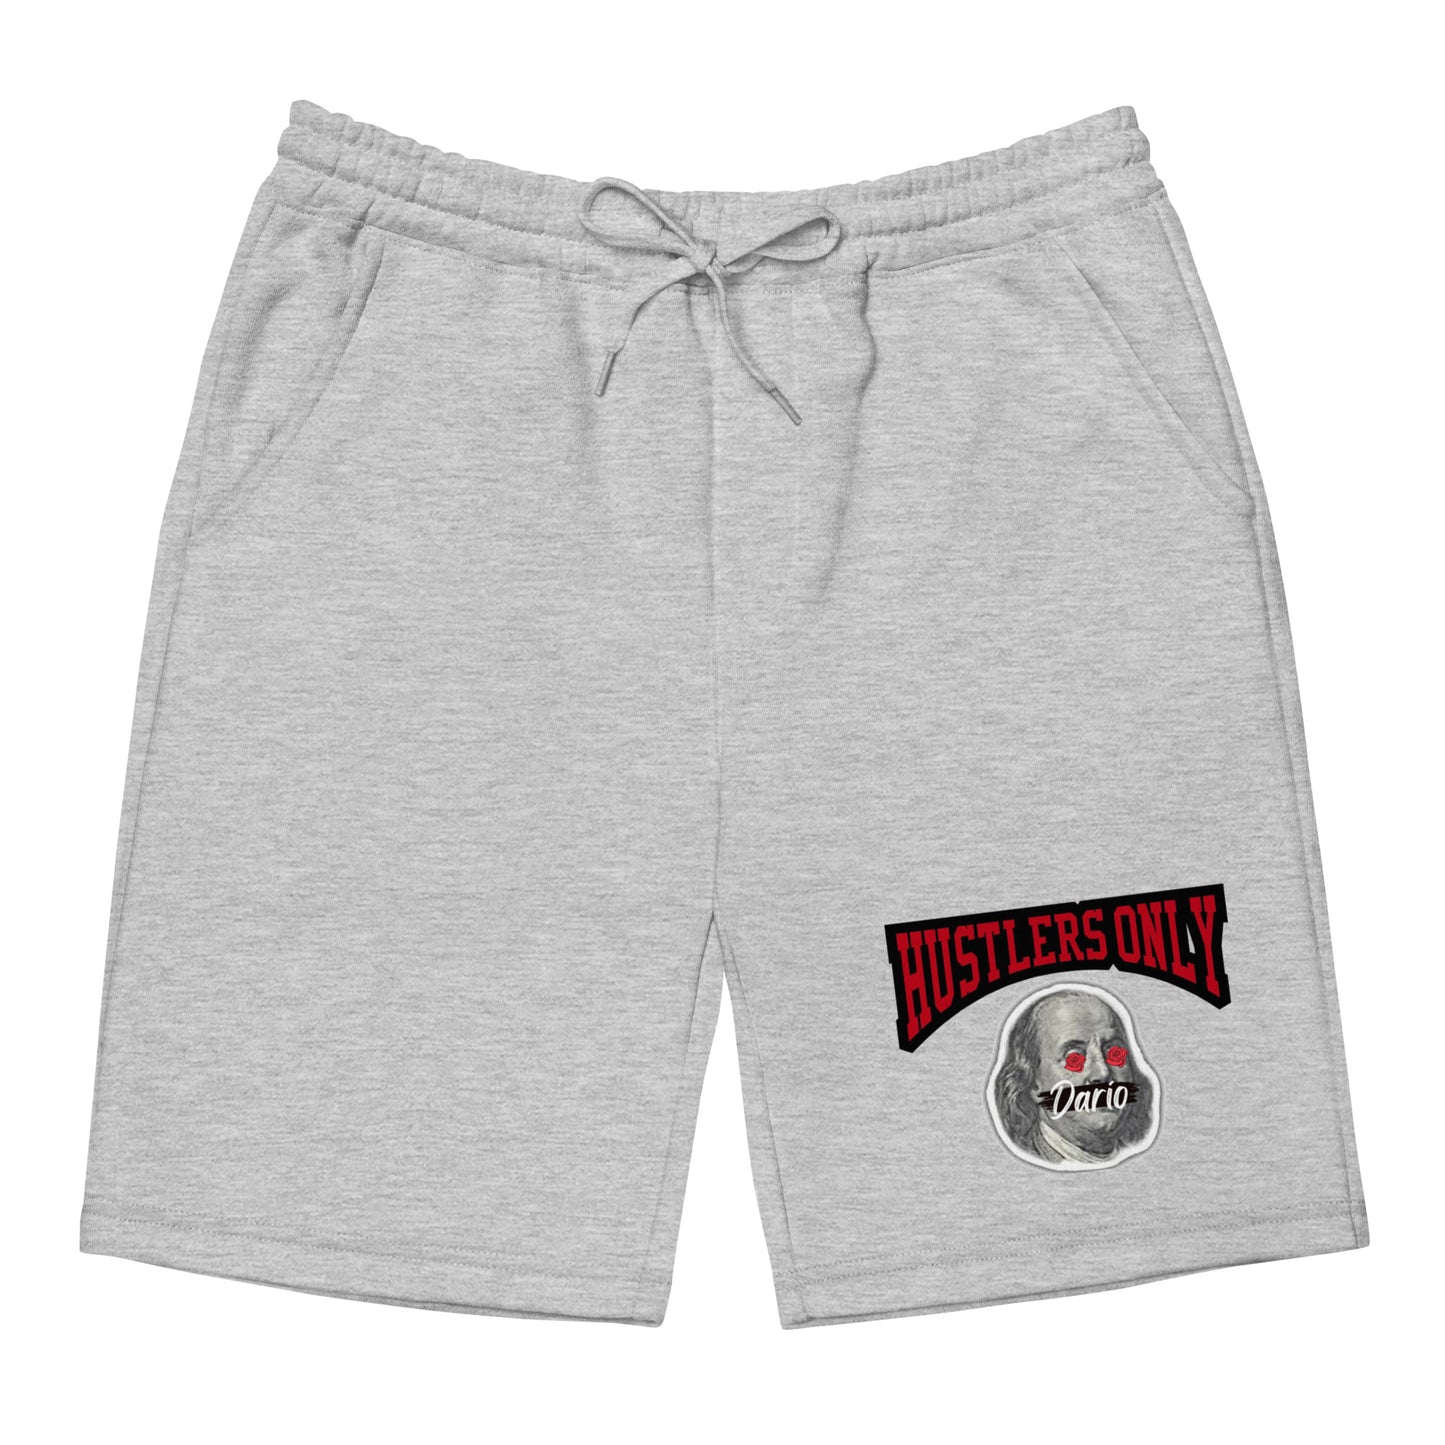 Men's Hustler$ Only shorts